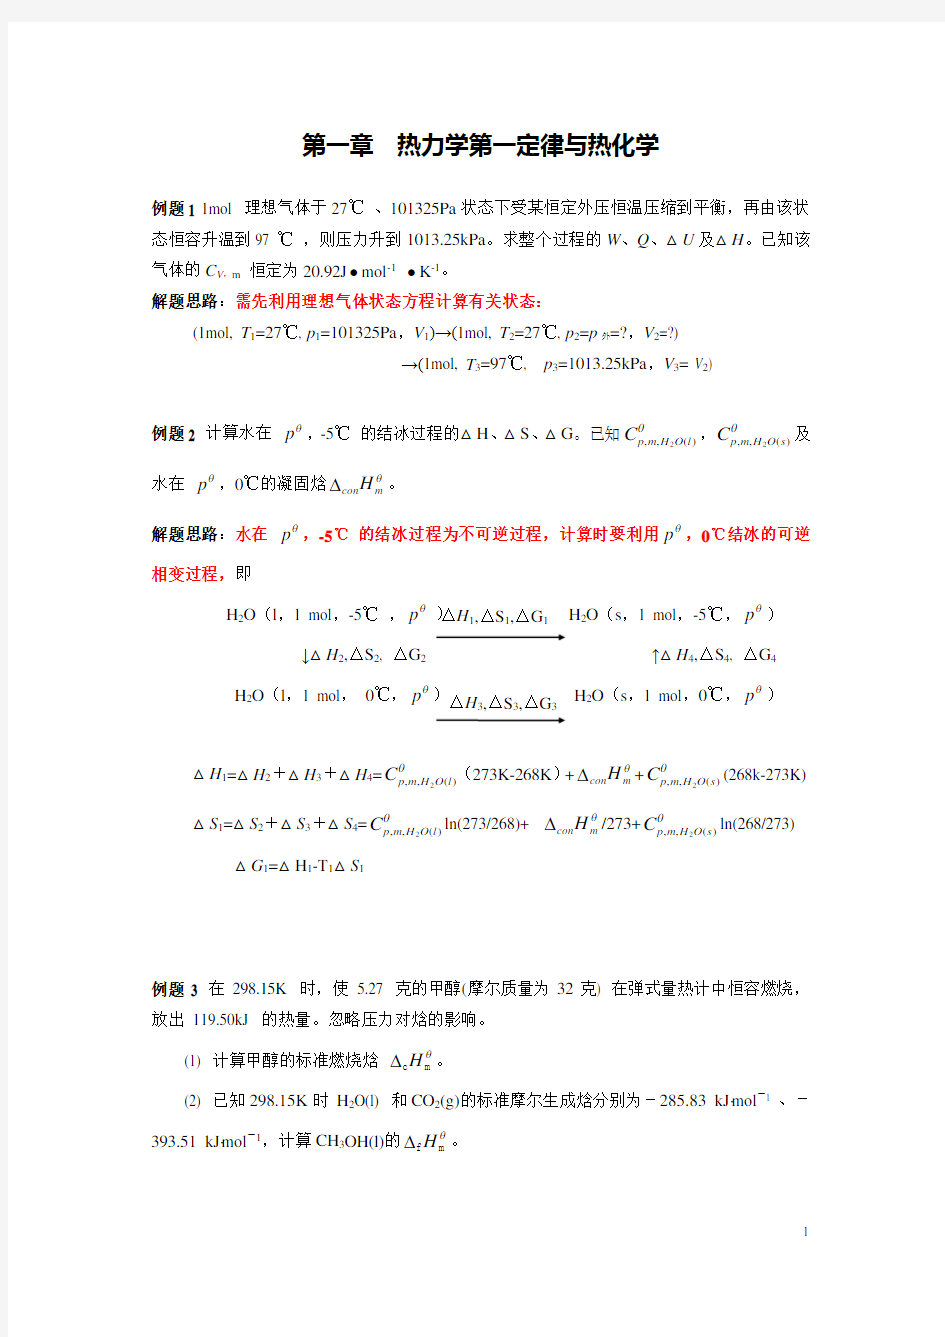 南京大学《物理化学》(上学期)每章典型例题.doc